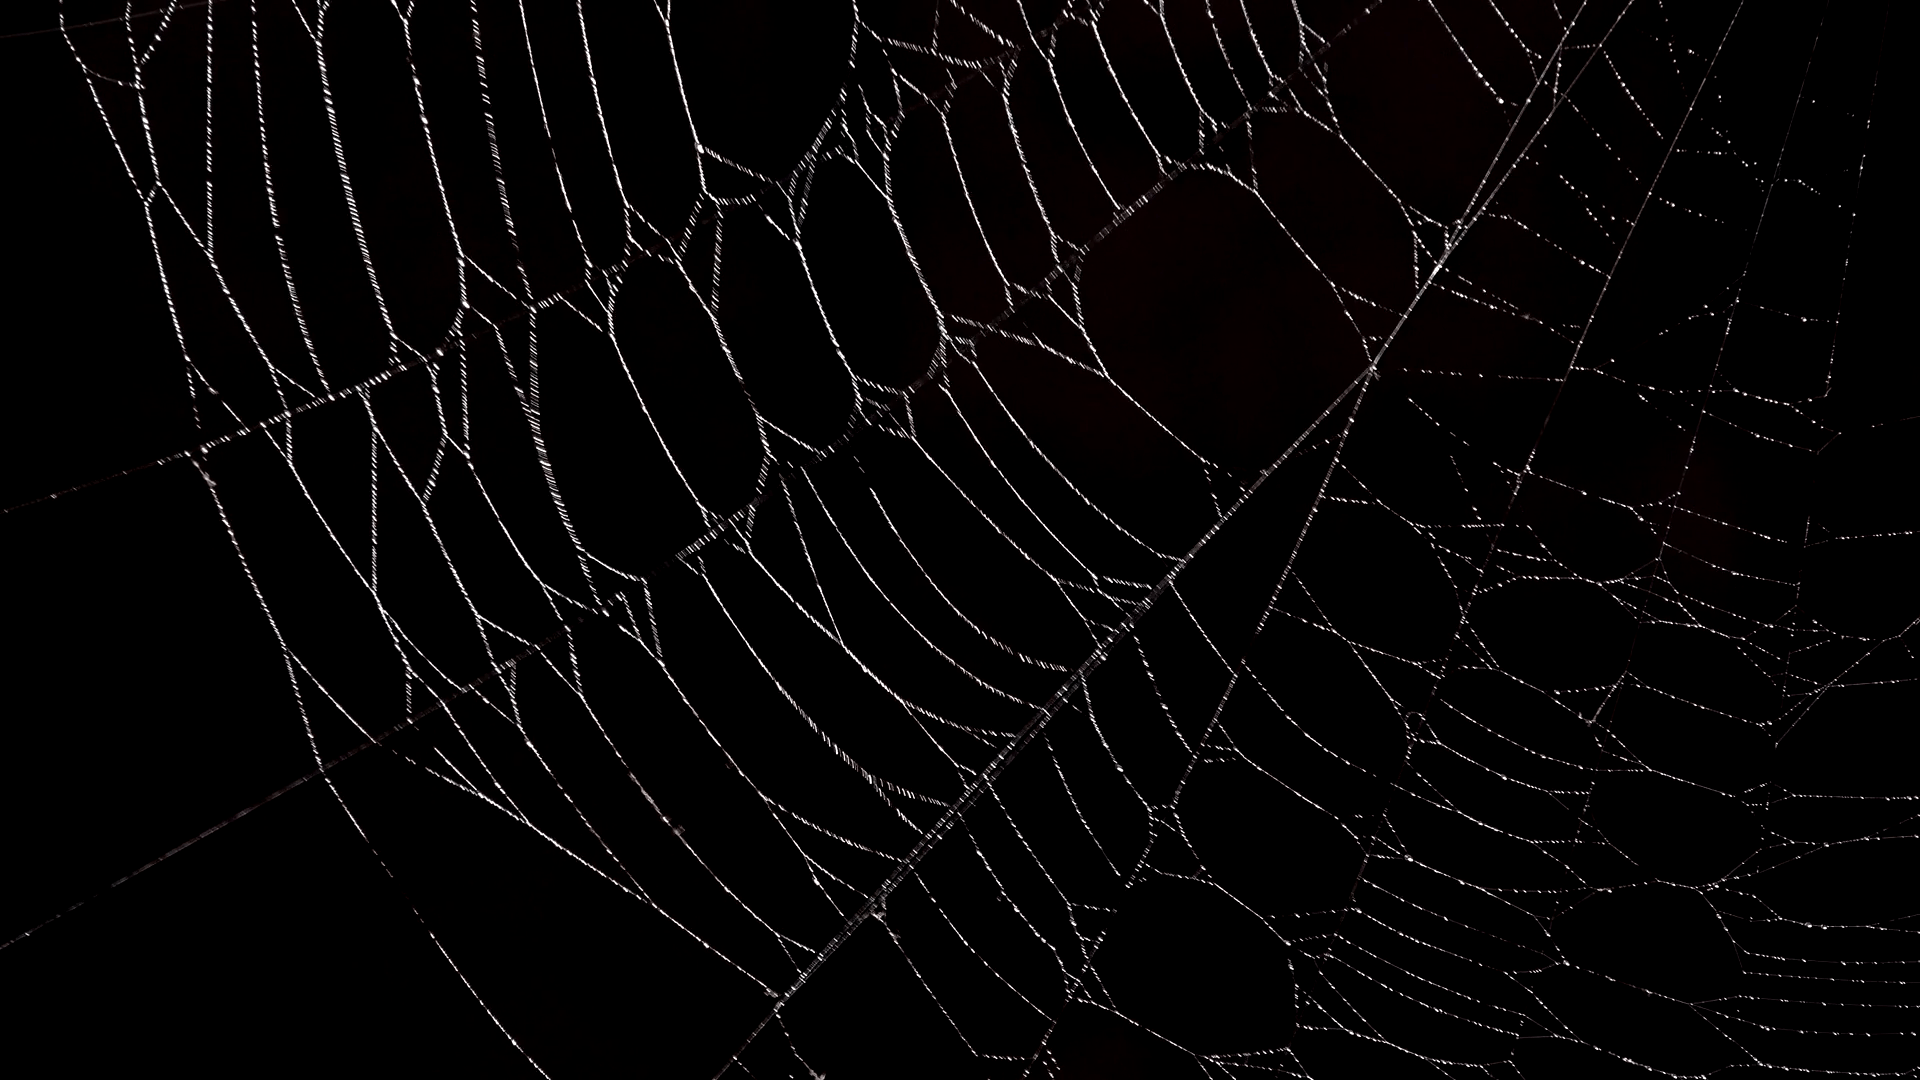 Focus on spider web, night dark background Stock Video Footage